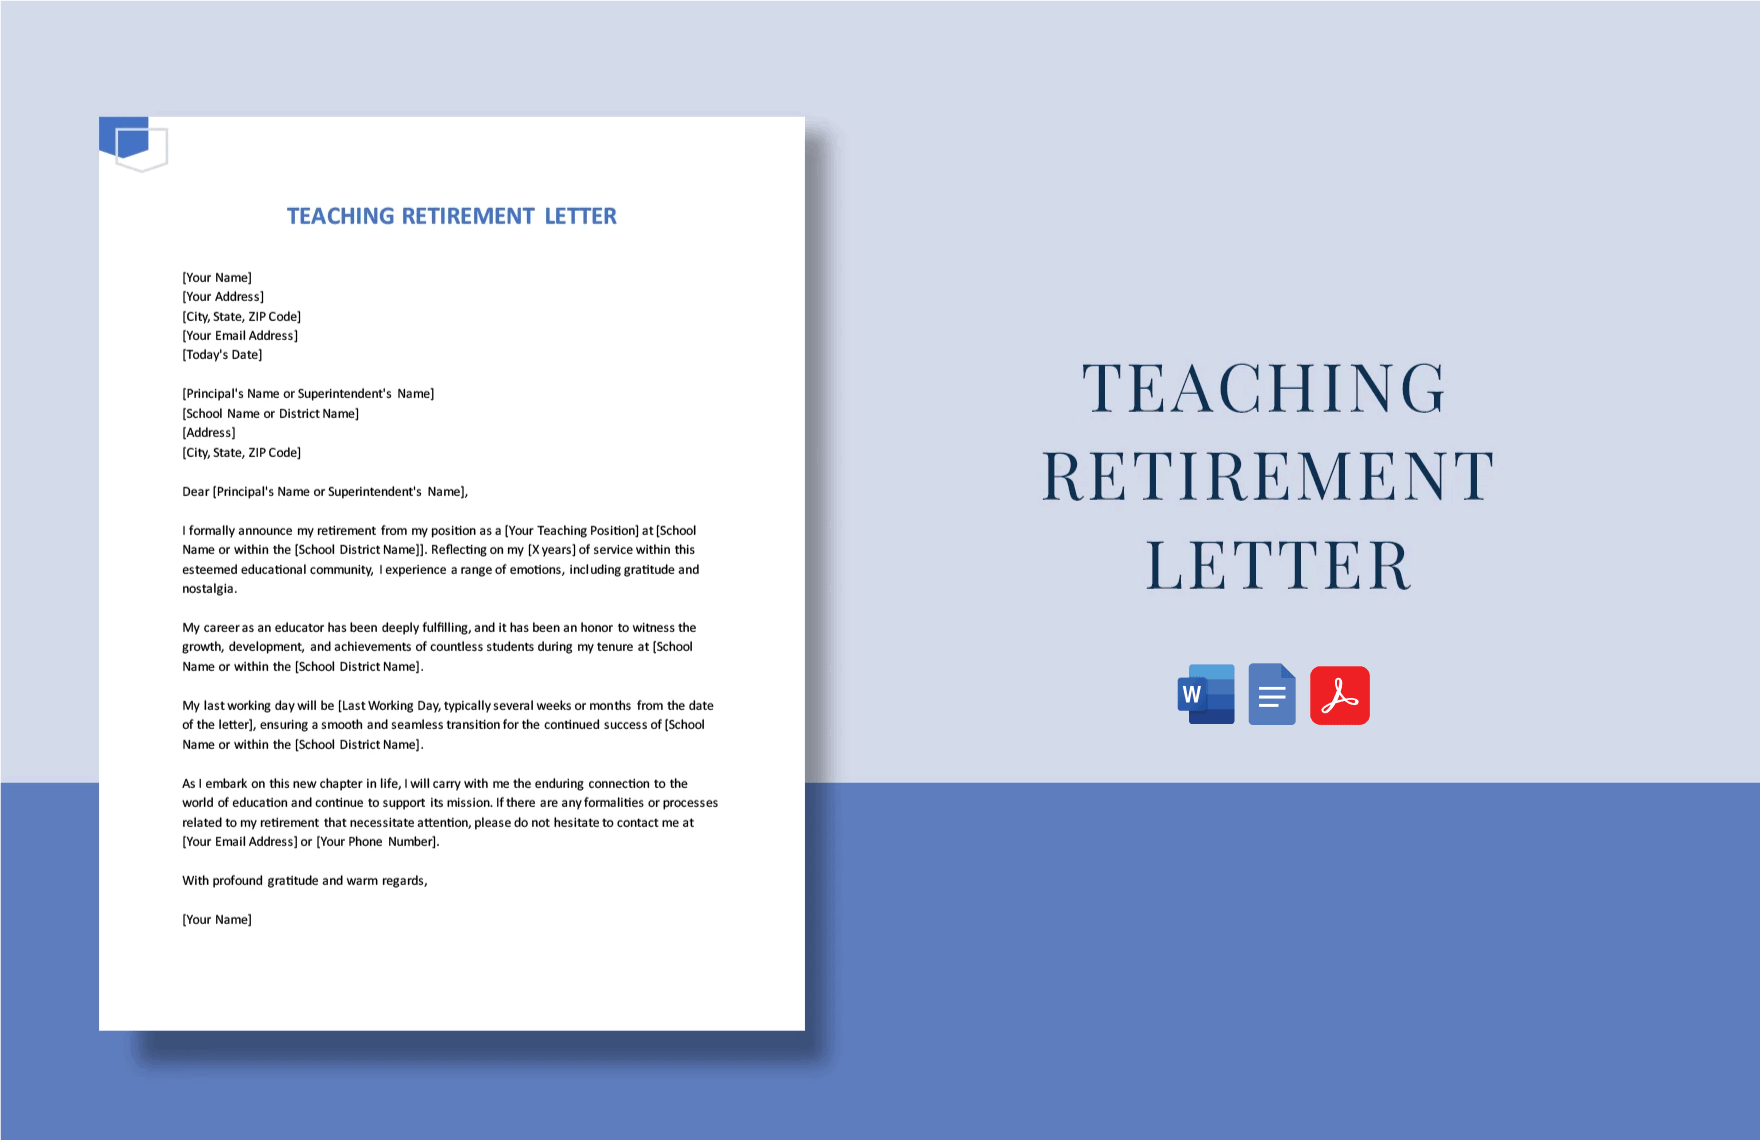 Teaching Retirement Letter